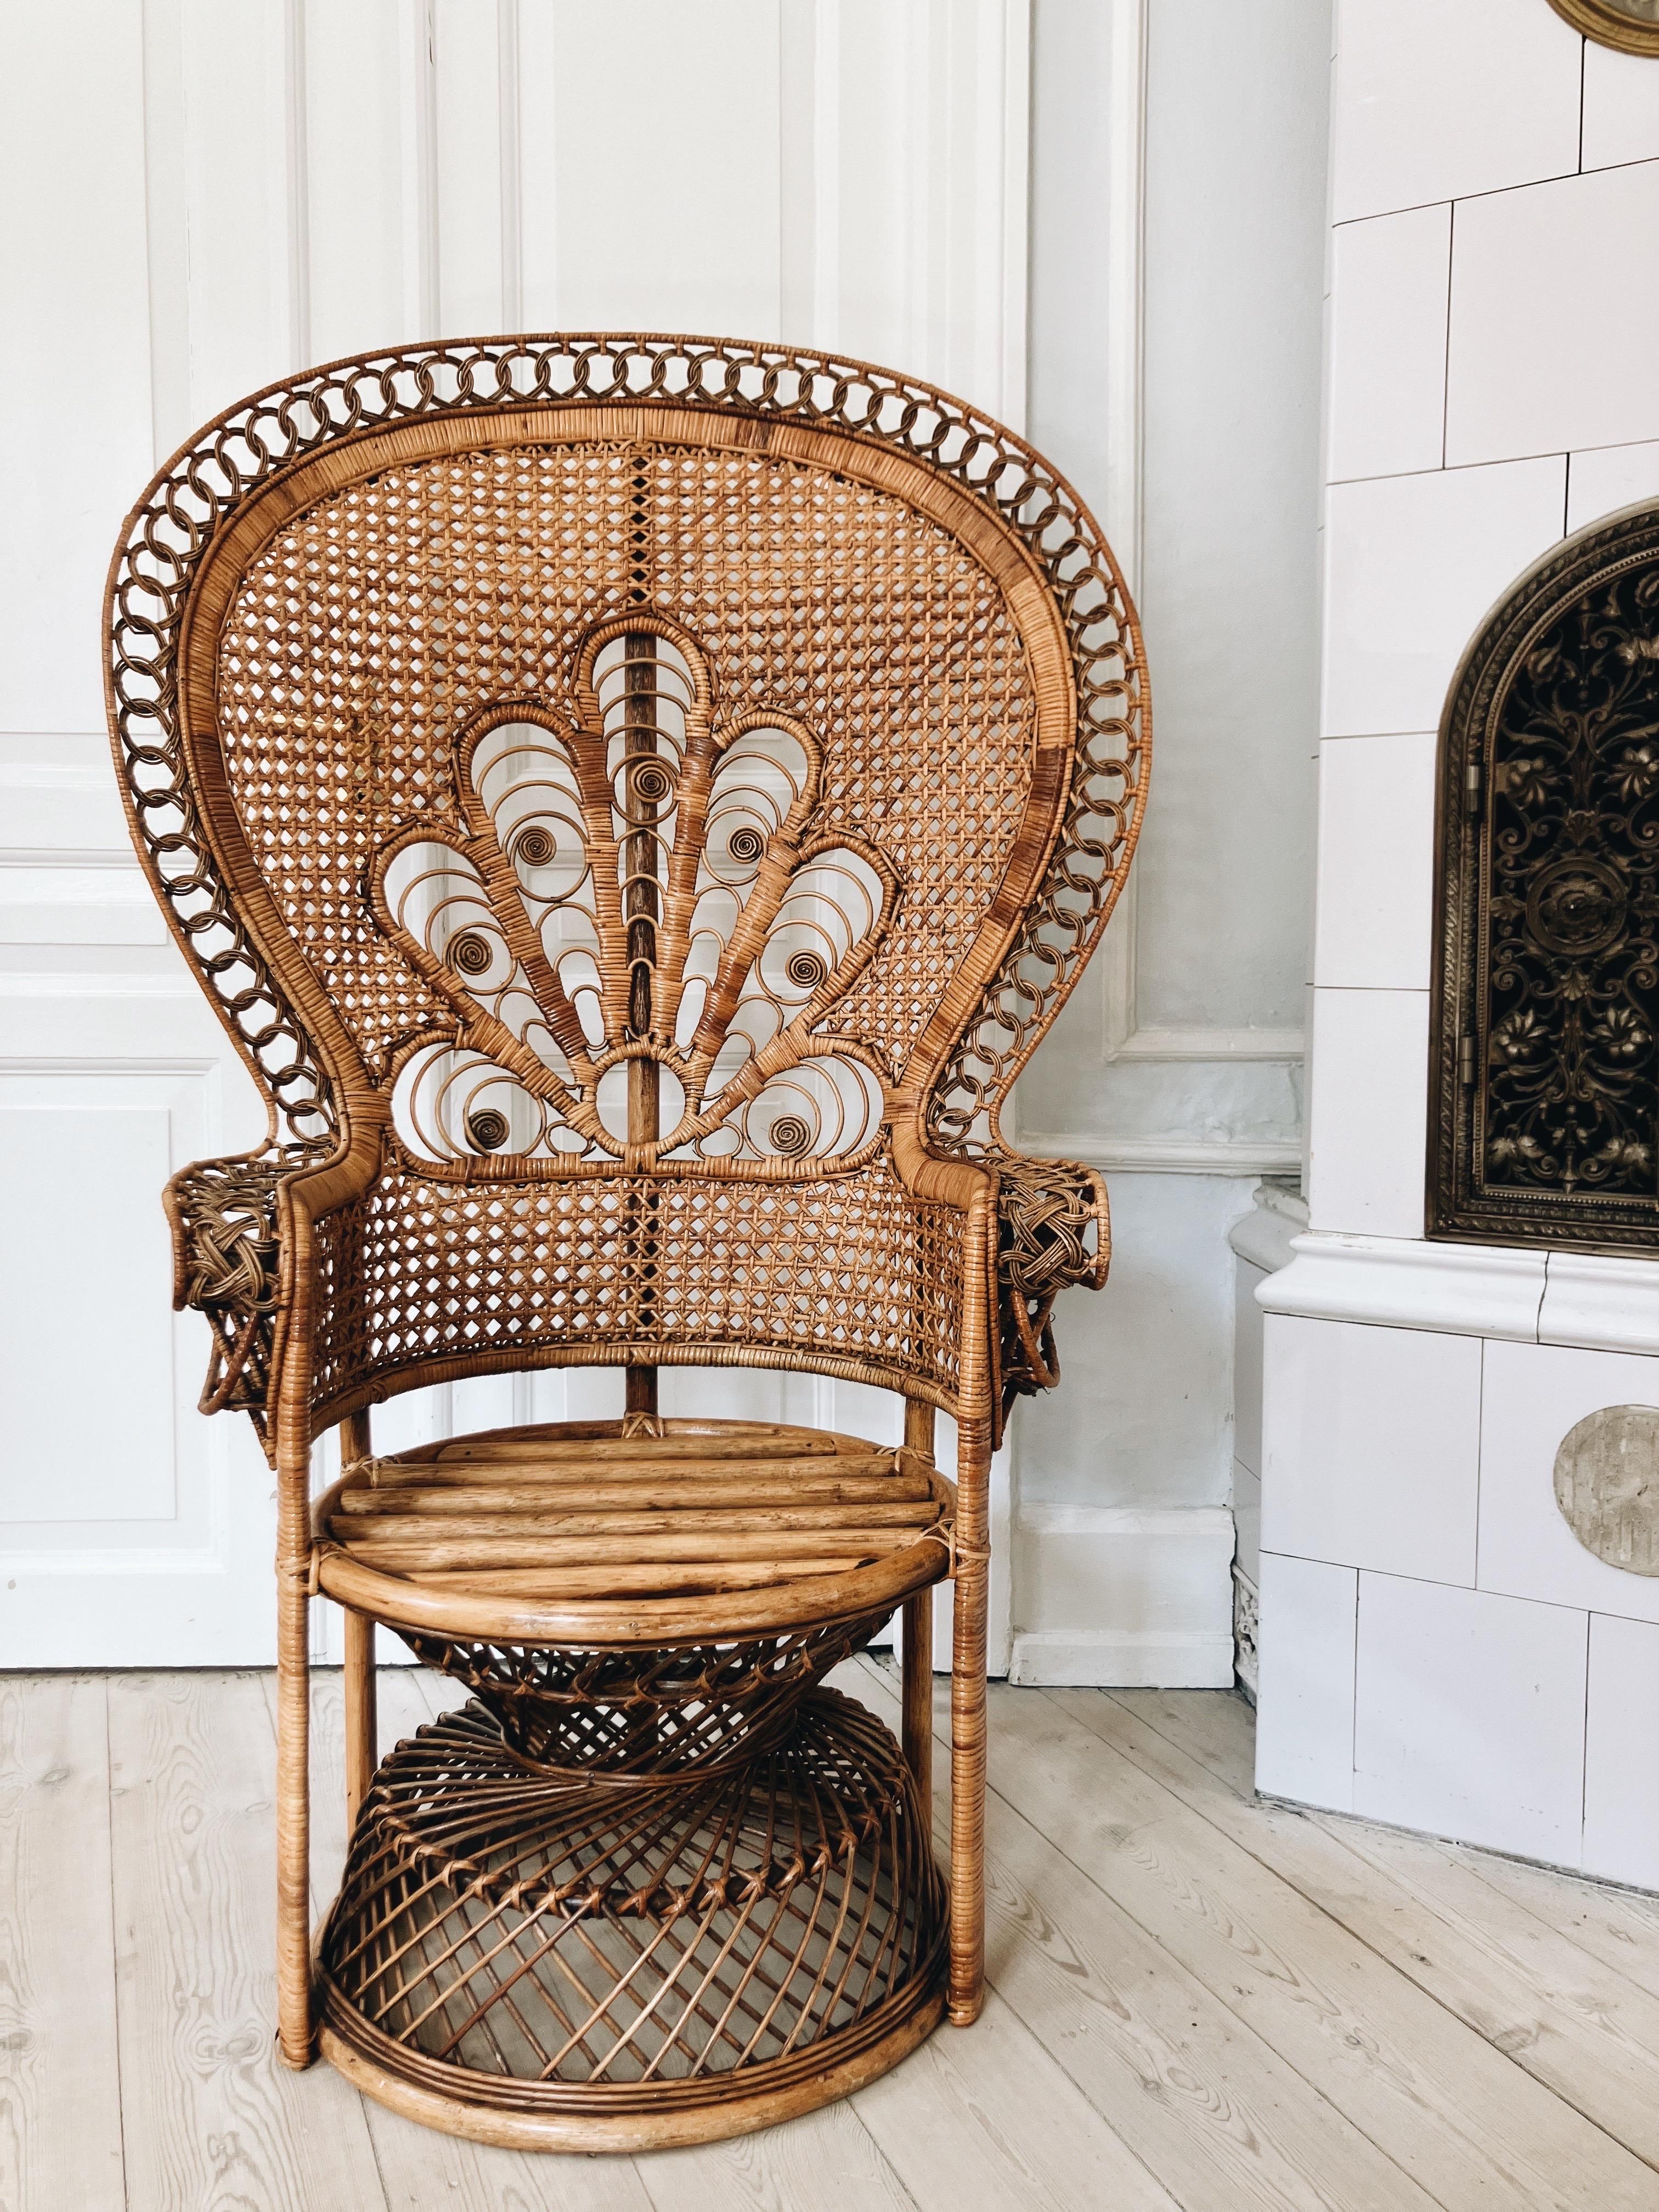 Chaise française en forme de paon des années 1960.

La chaise paon est fabriquée en bambou tressé. Sculptures décoratives et bon état d'origine. Stabel et avec très peu de traces d'utilisation. 

La chaise provient d'une dame âgée qui l'a achetée en